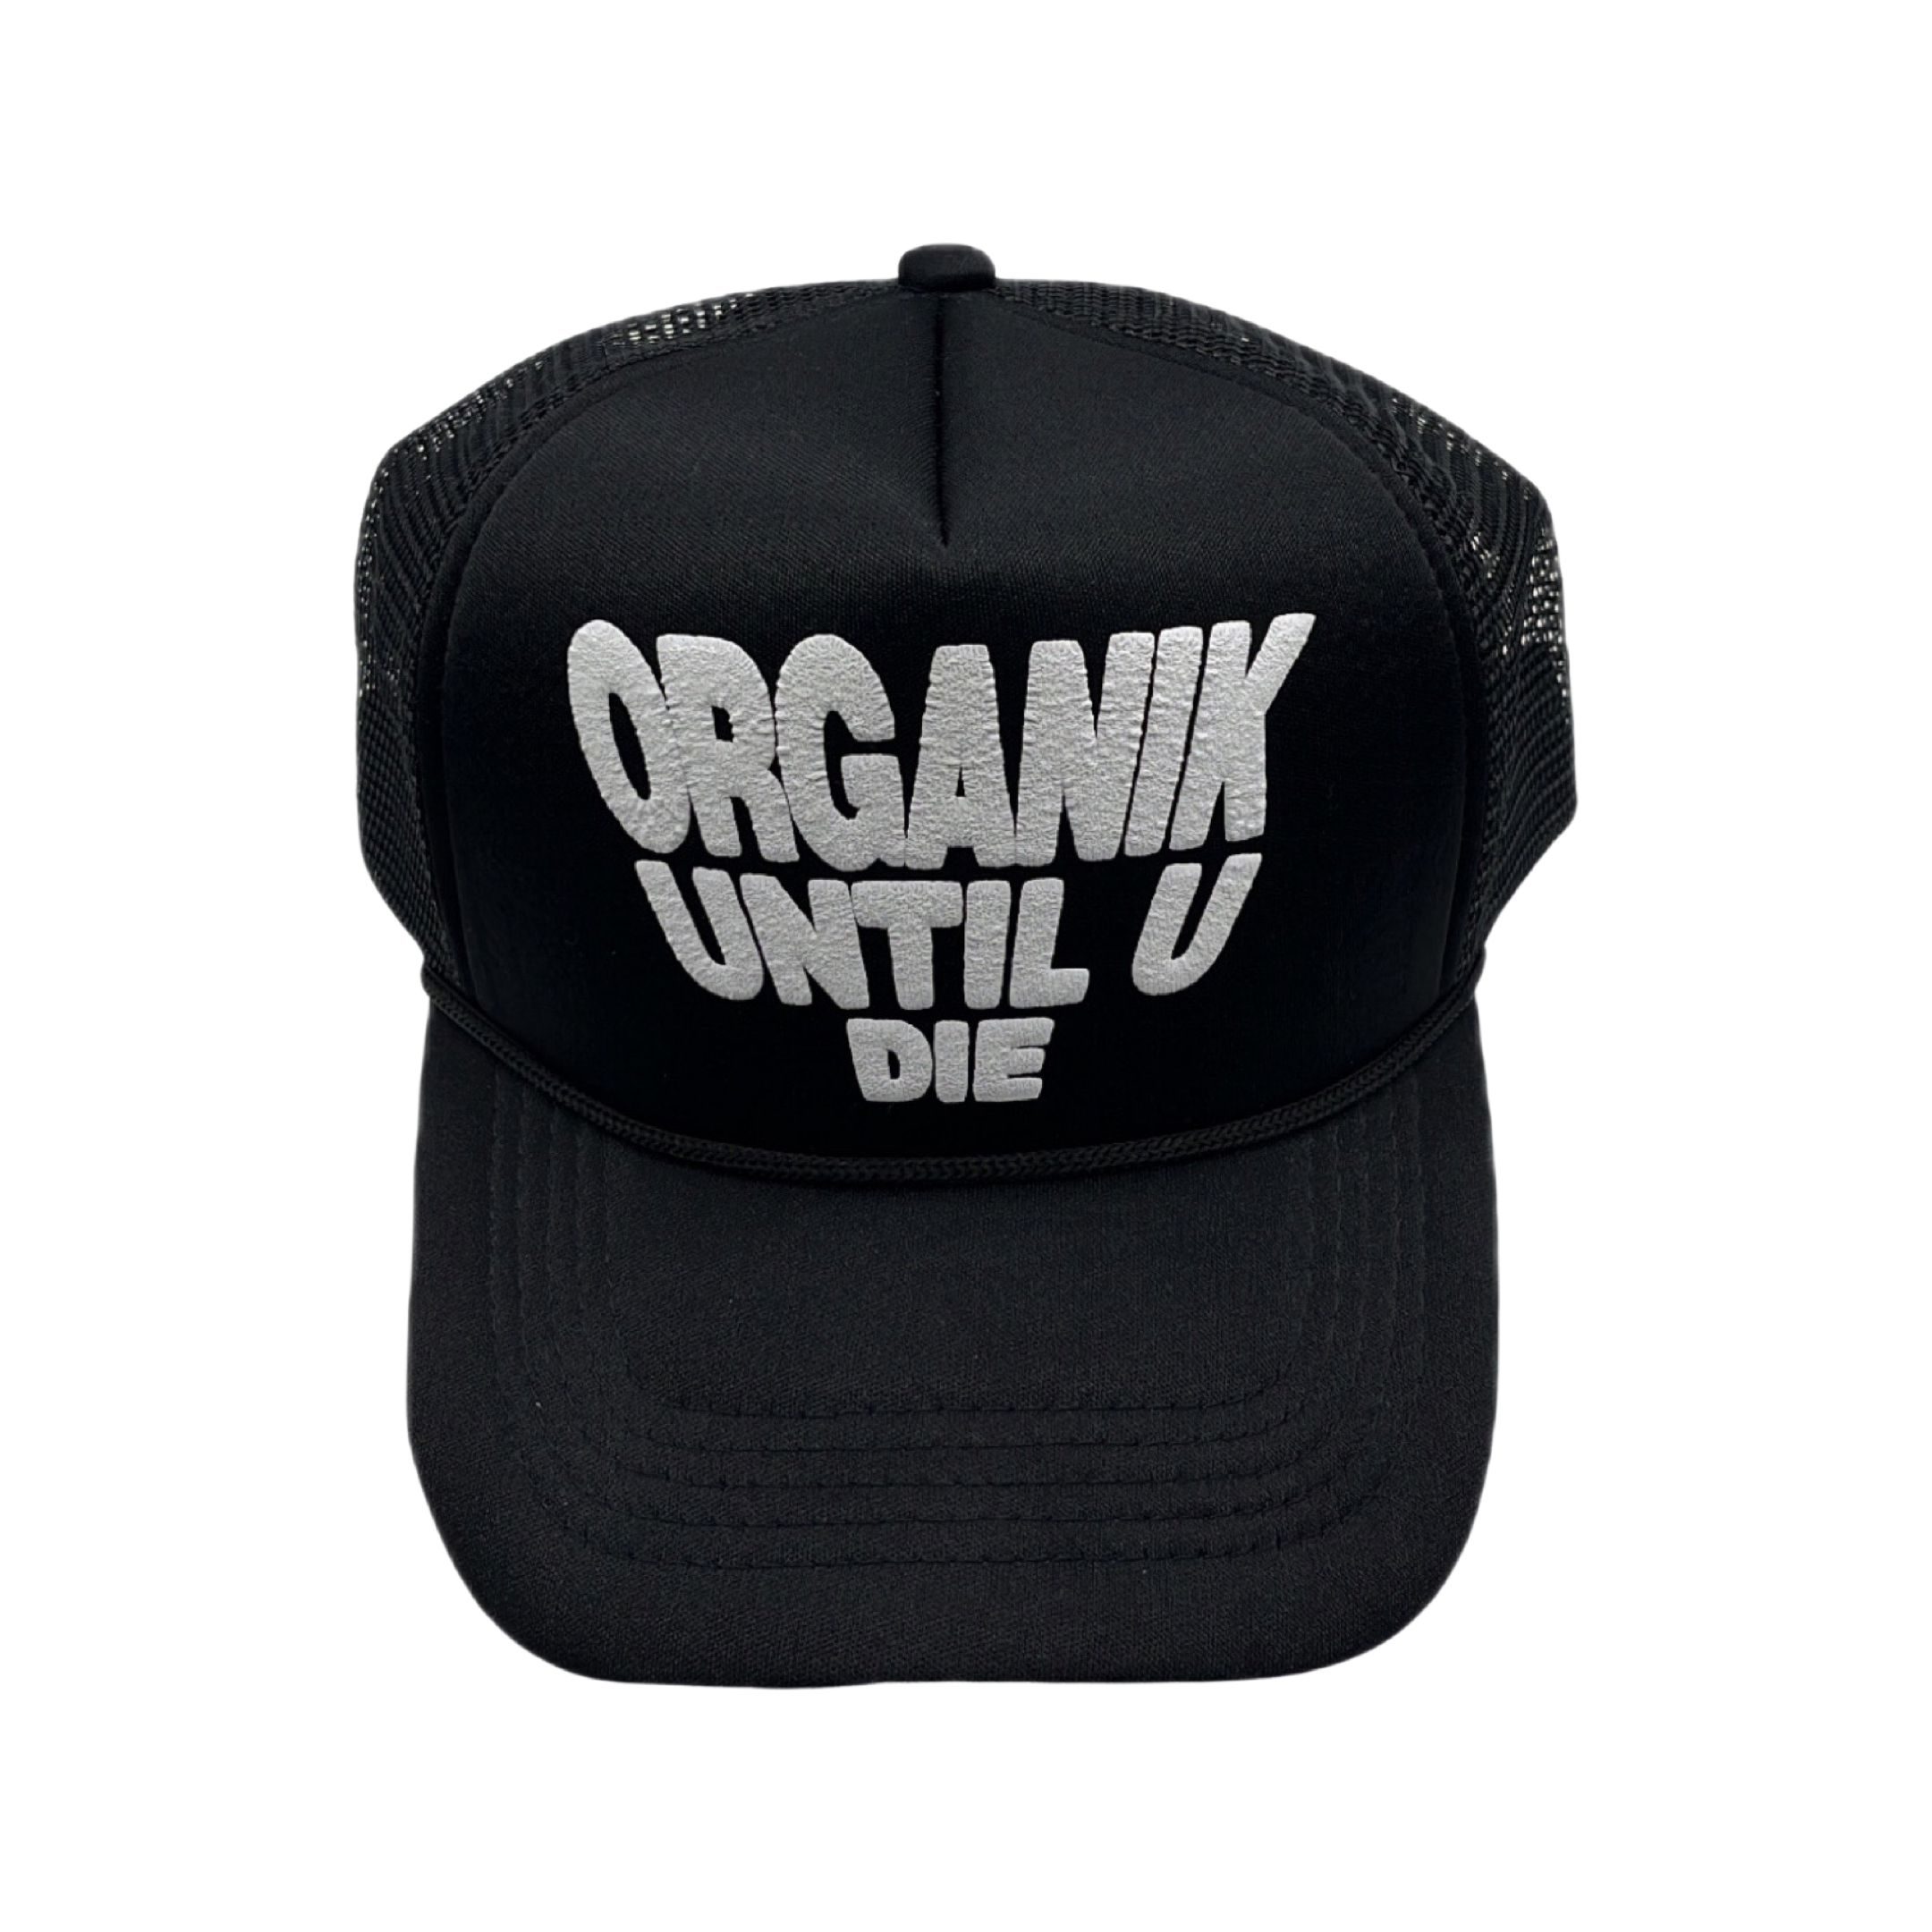 Mr. Organik and Grind Until U Die Trucker Hat Collab